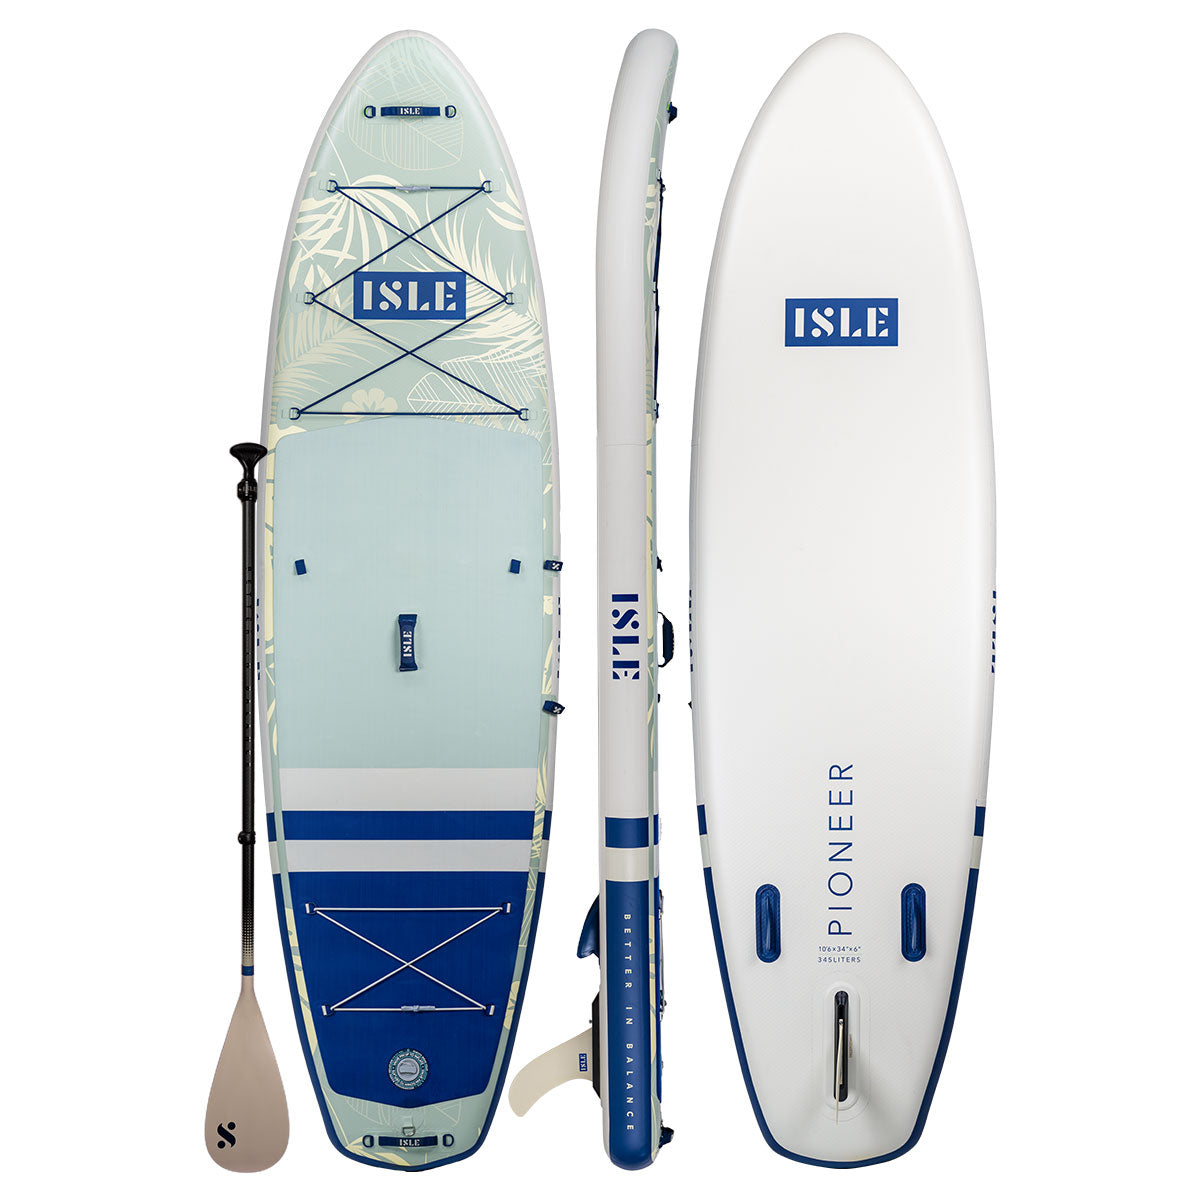 Explorer 2.0 | Inflatable Paddle ISLE ISLE Paddle Boards | Board 